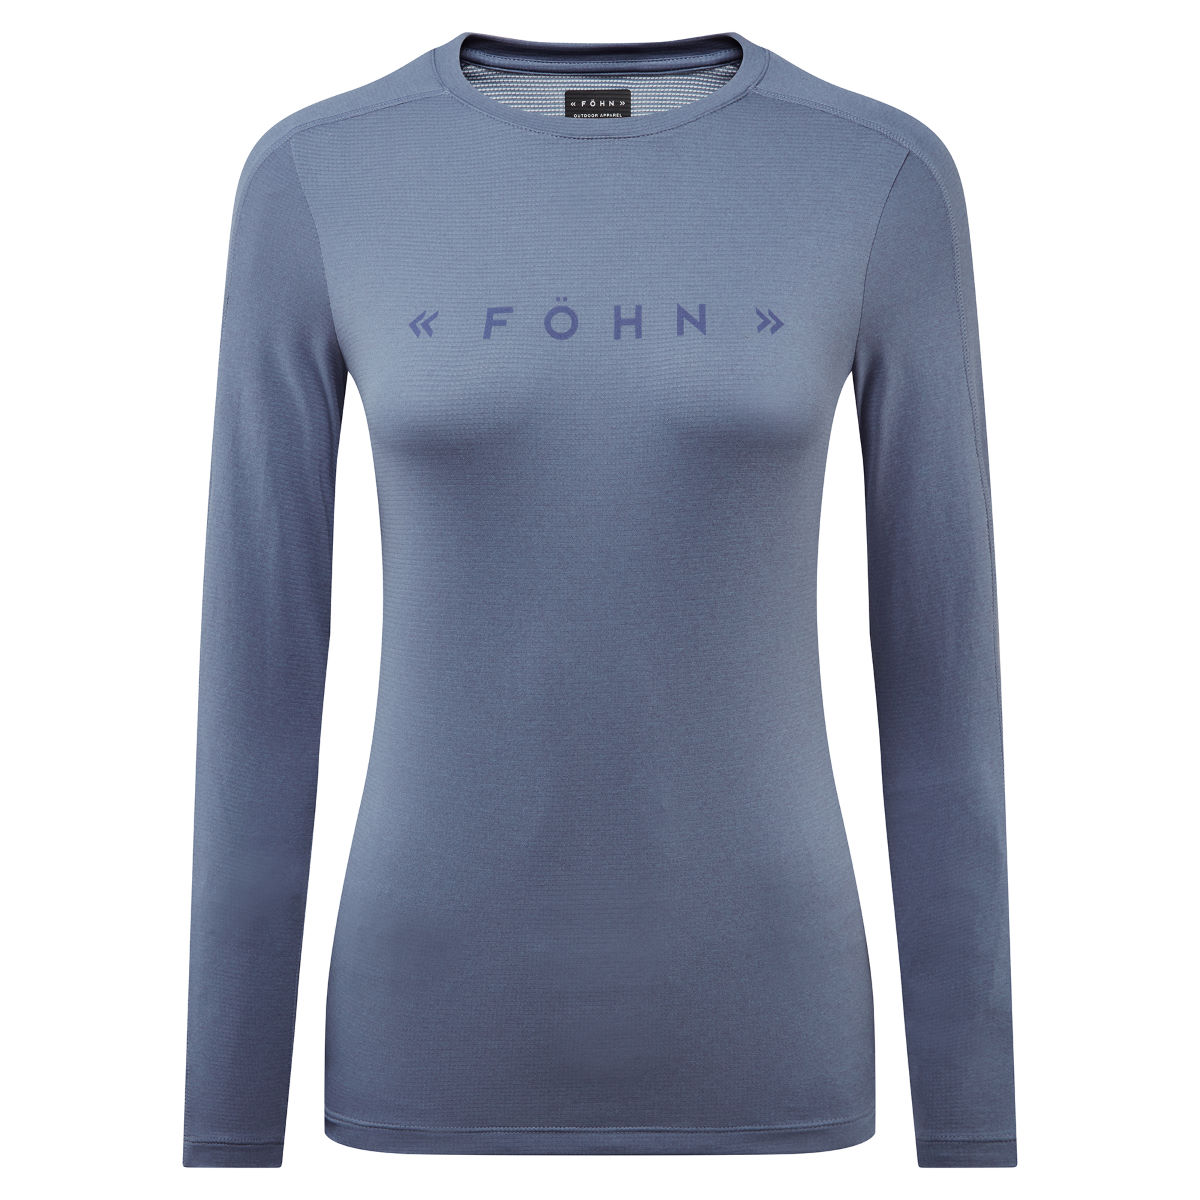 Camiseta de manga larga Föhn para mujer (con protección solar) - Camisetas